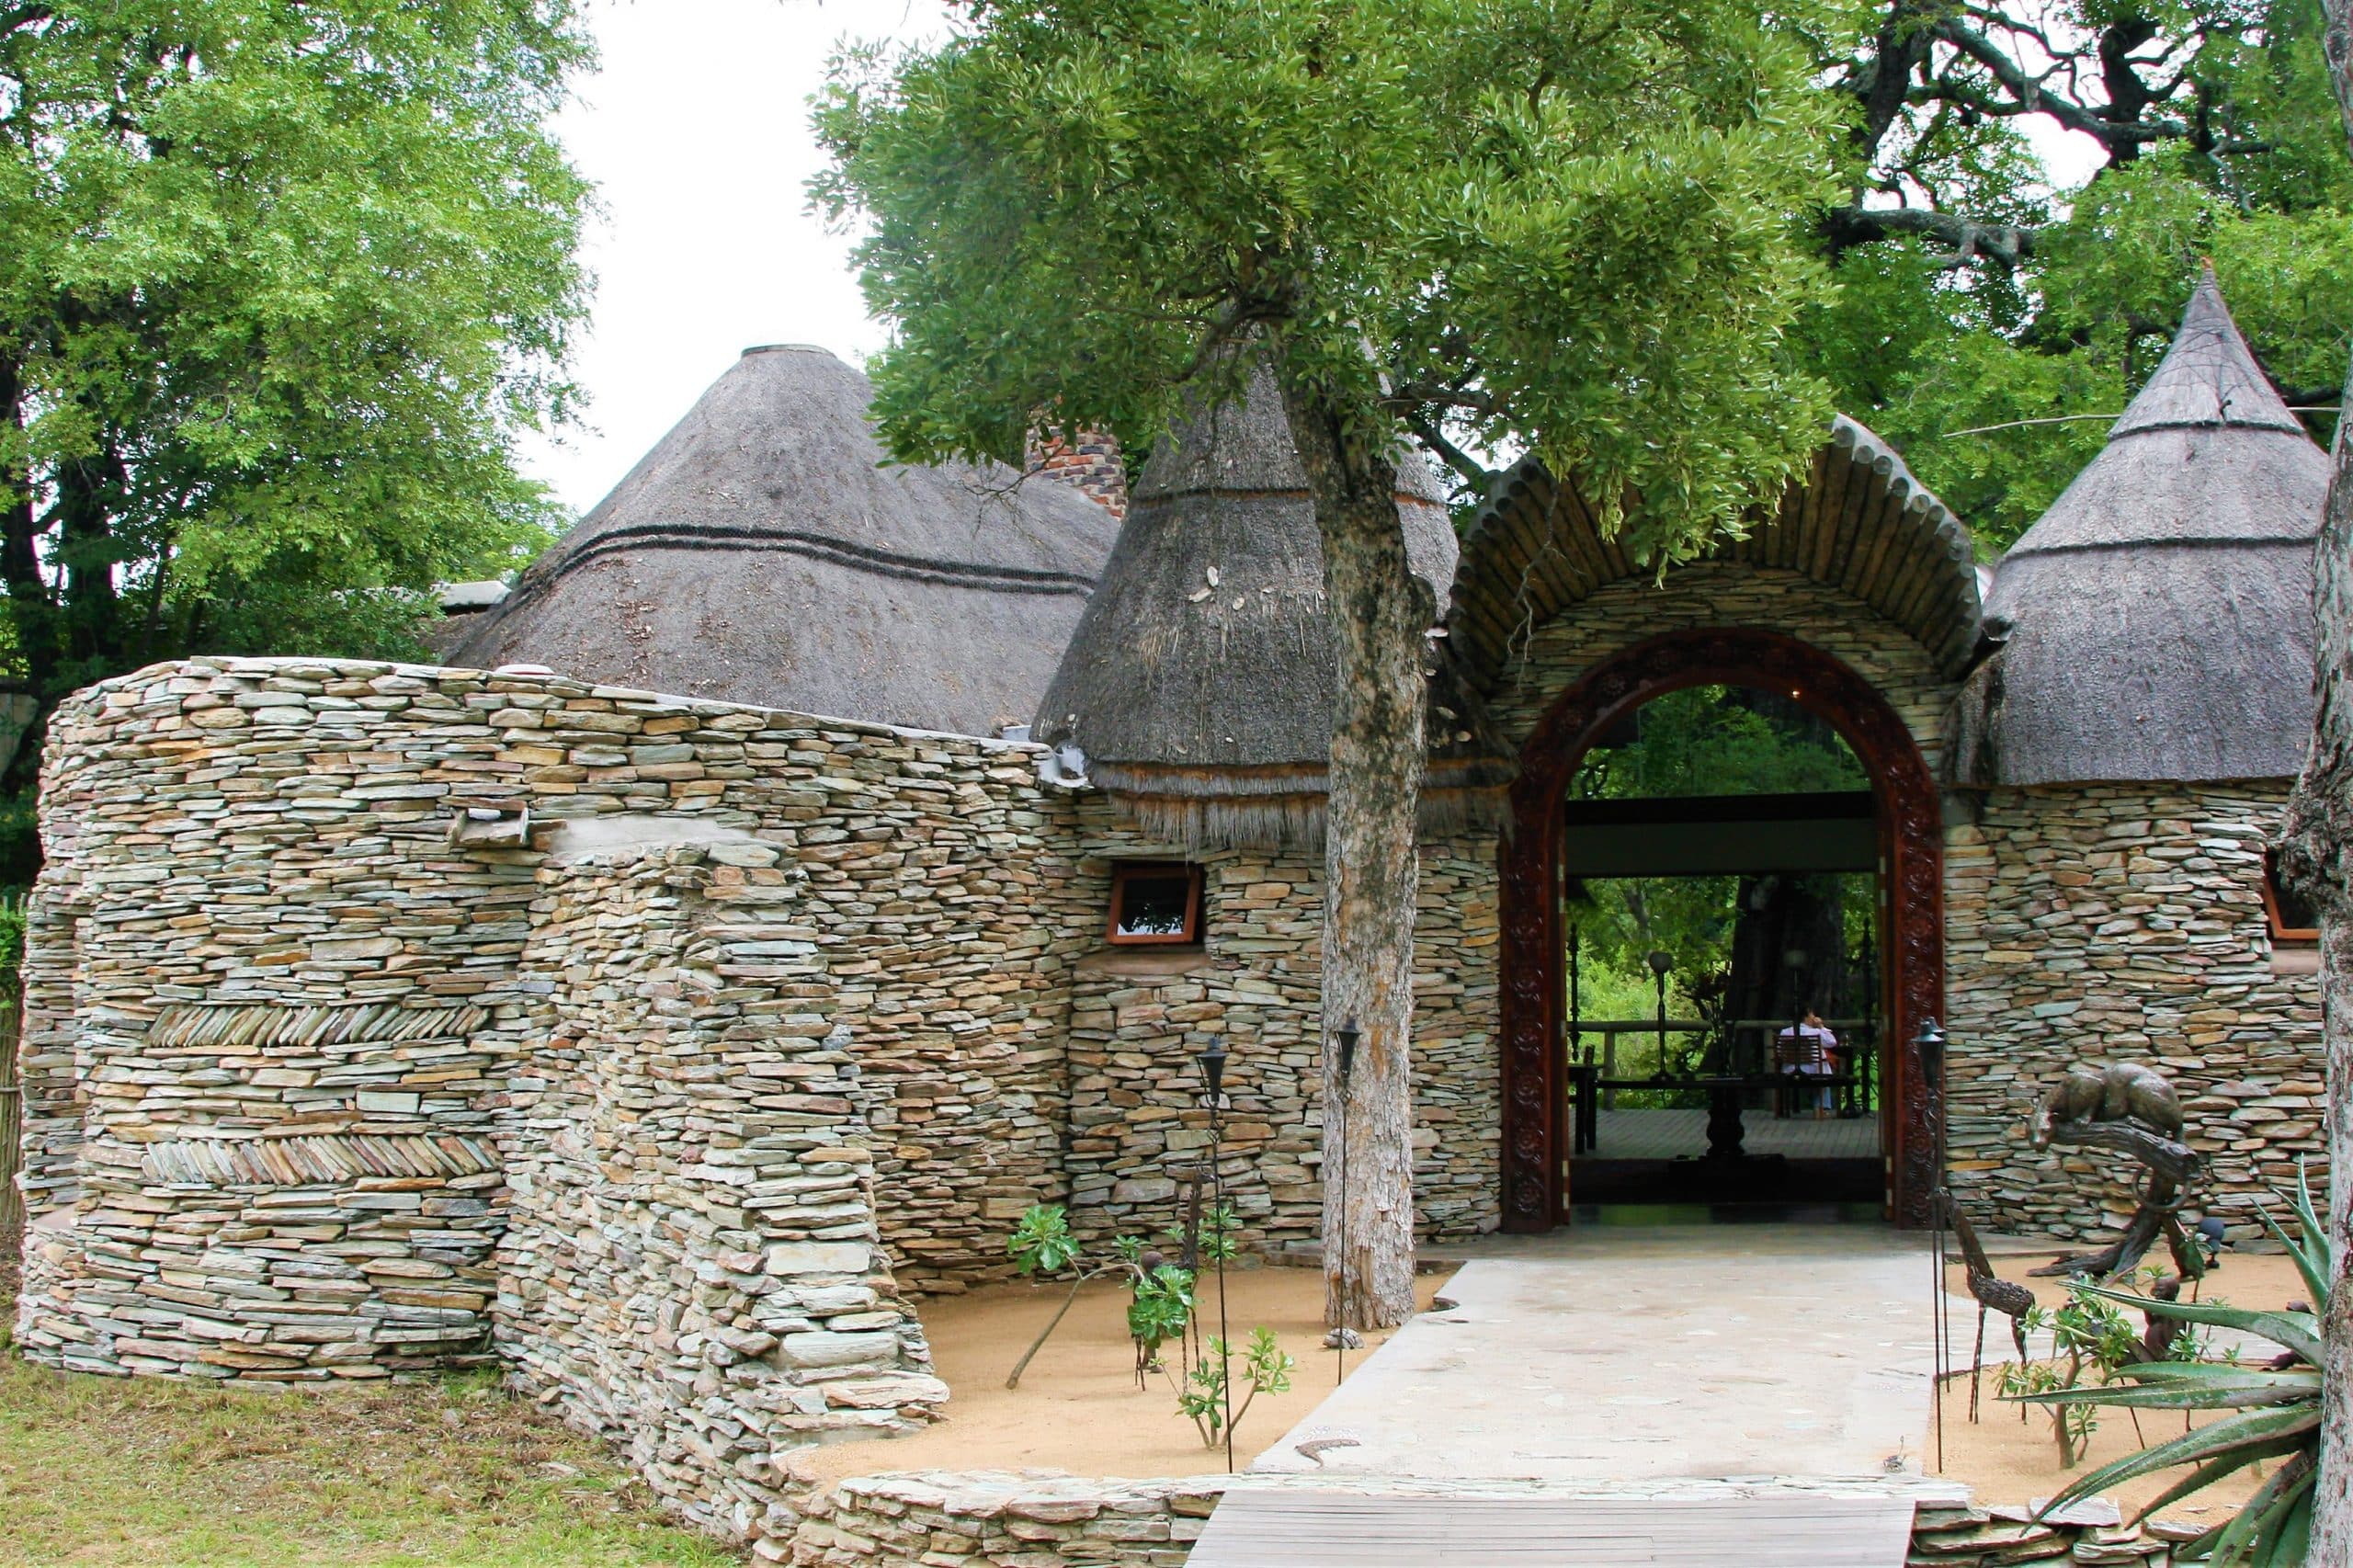 Tintswalo main entrance, David Manttan